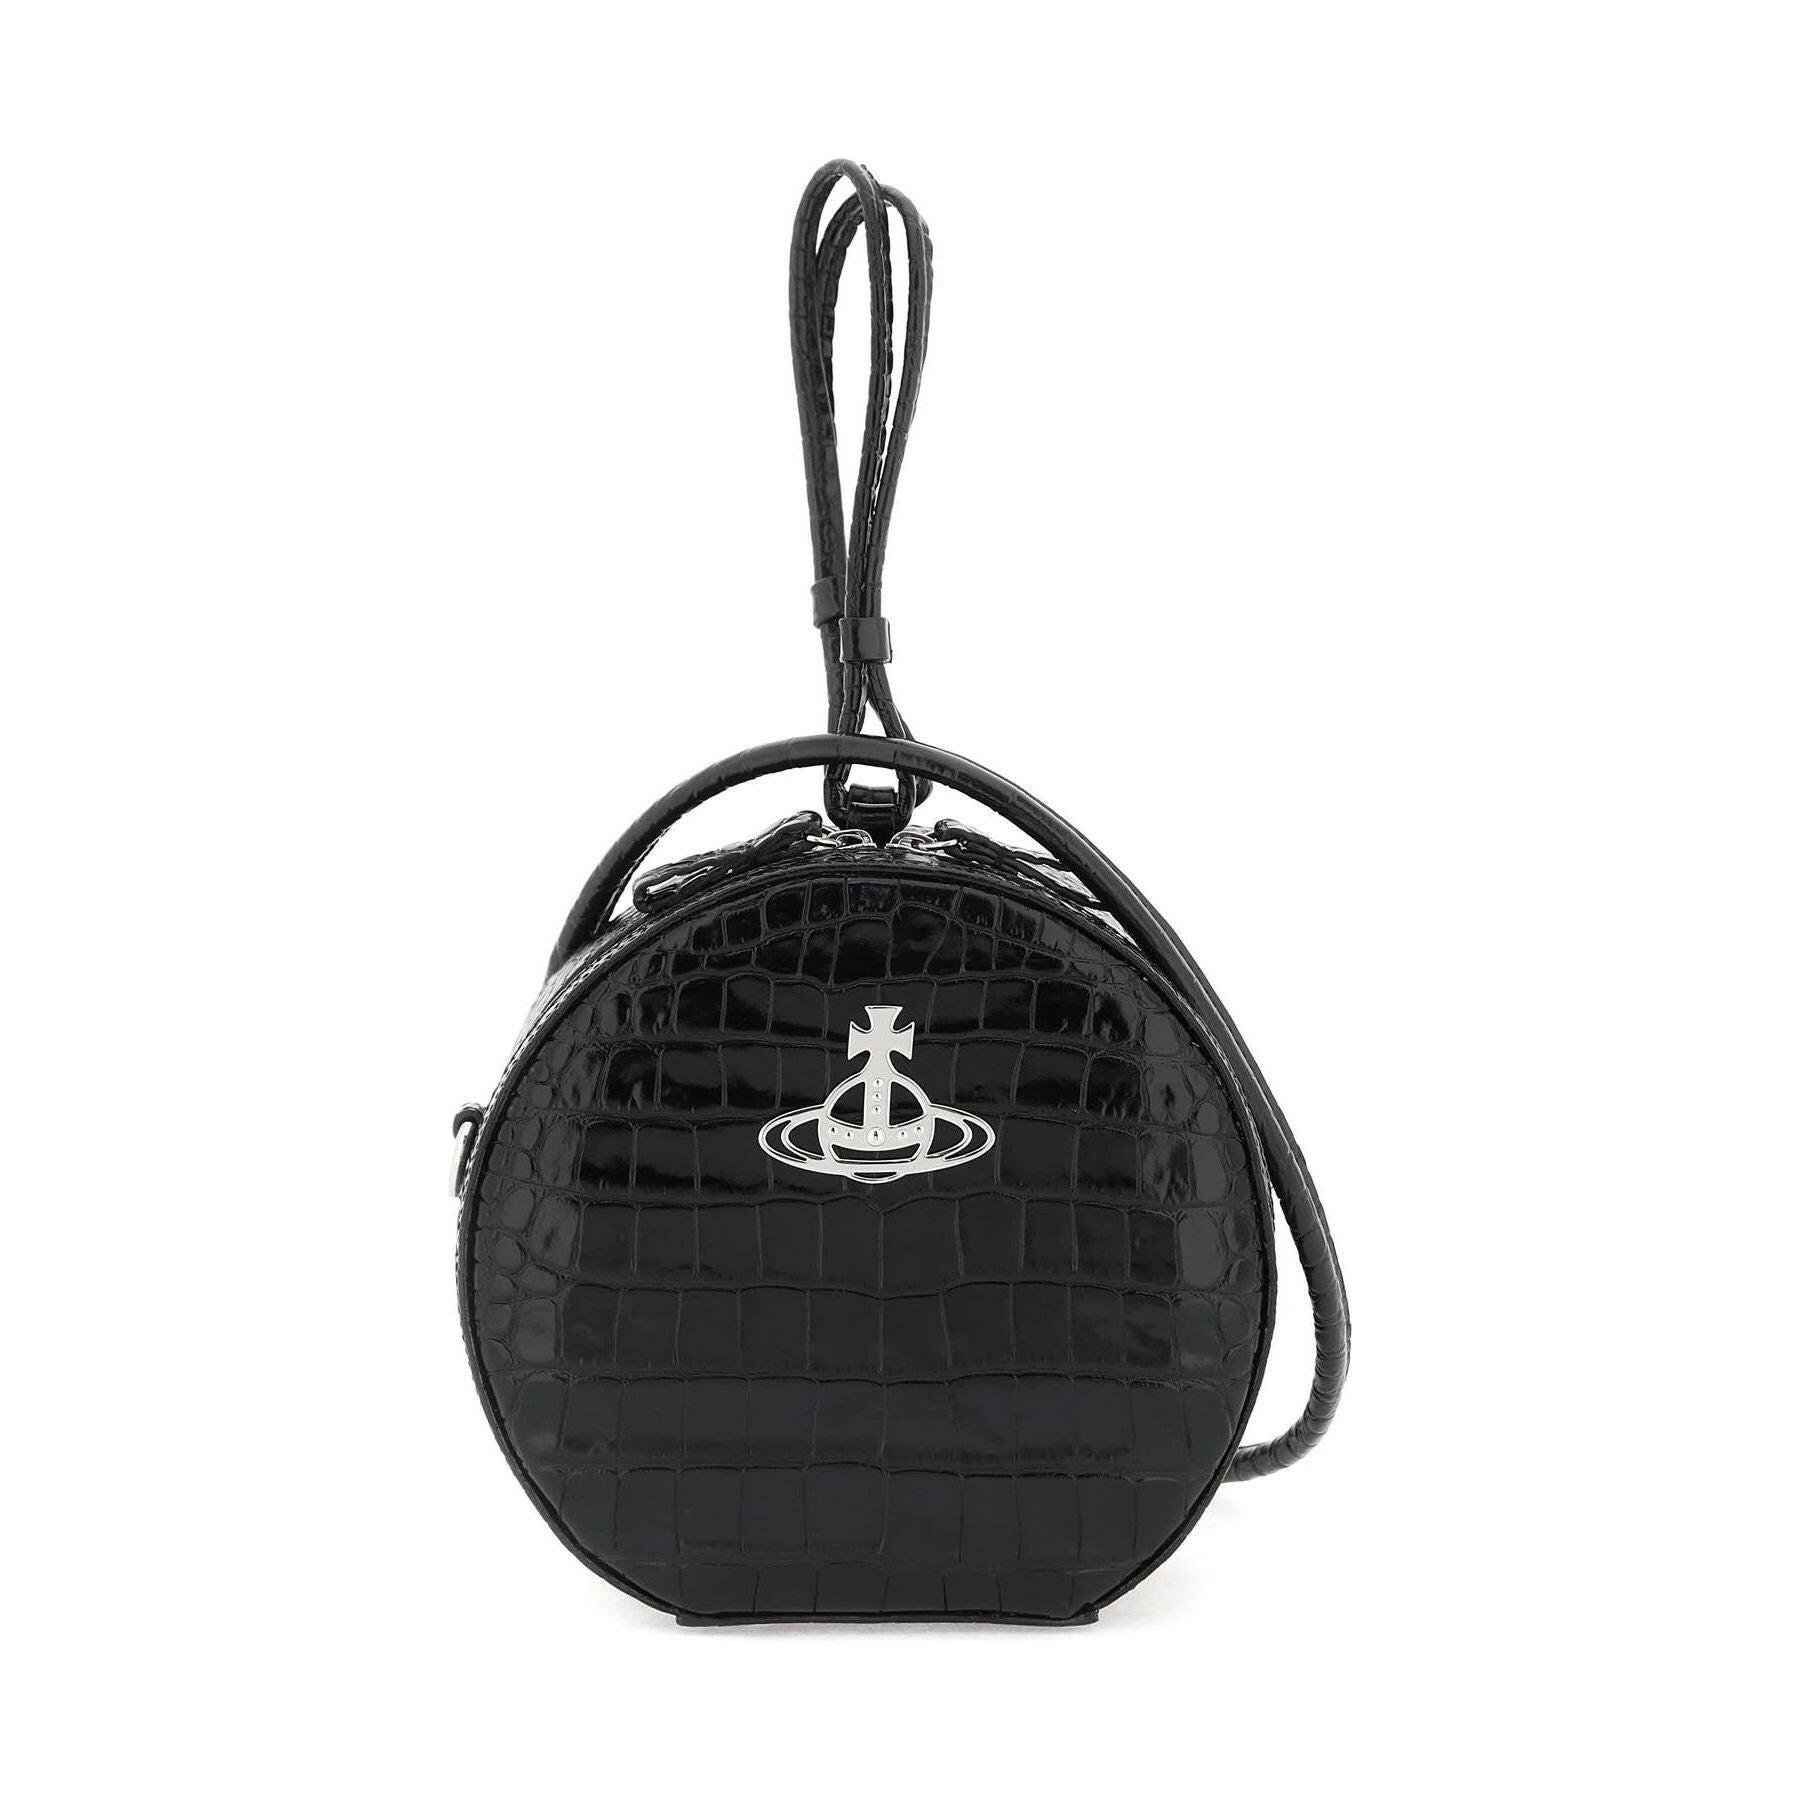 Croc-Embossed Hattie Leather Handbag